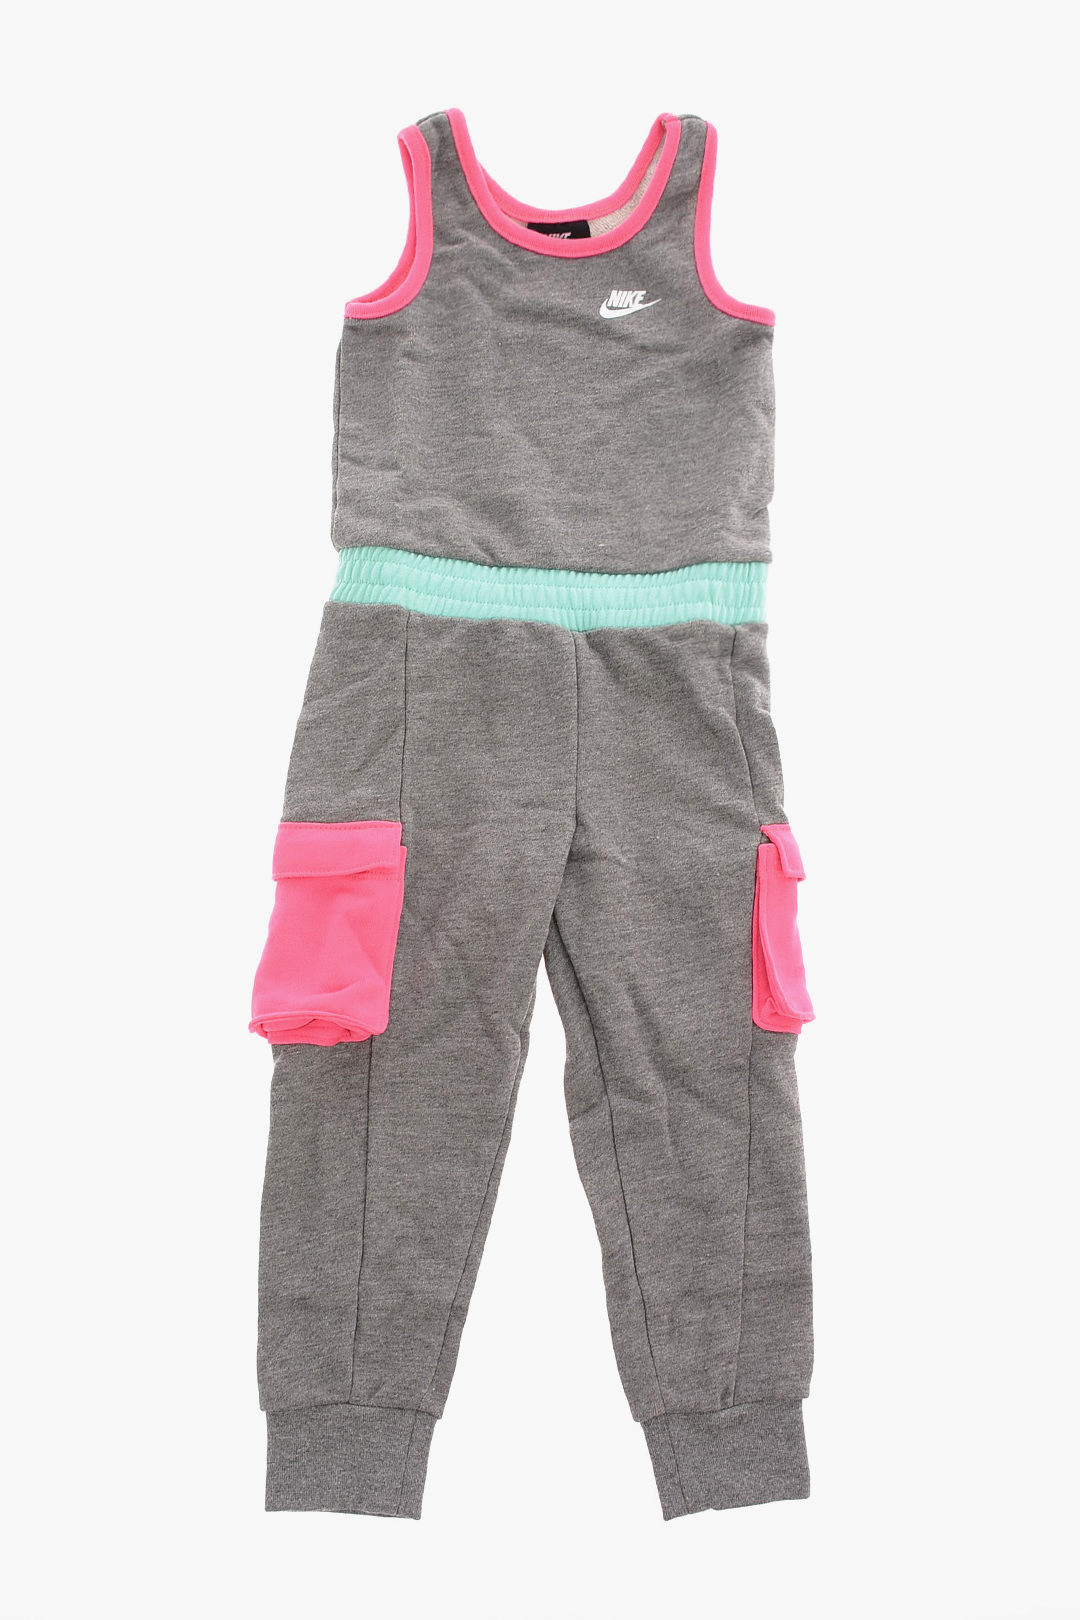 Nike KIDS Sleeveless Cargo Jumpsuit girls - Glamood Outlet